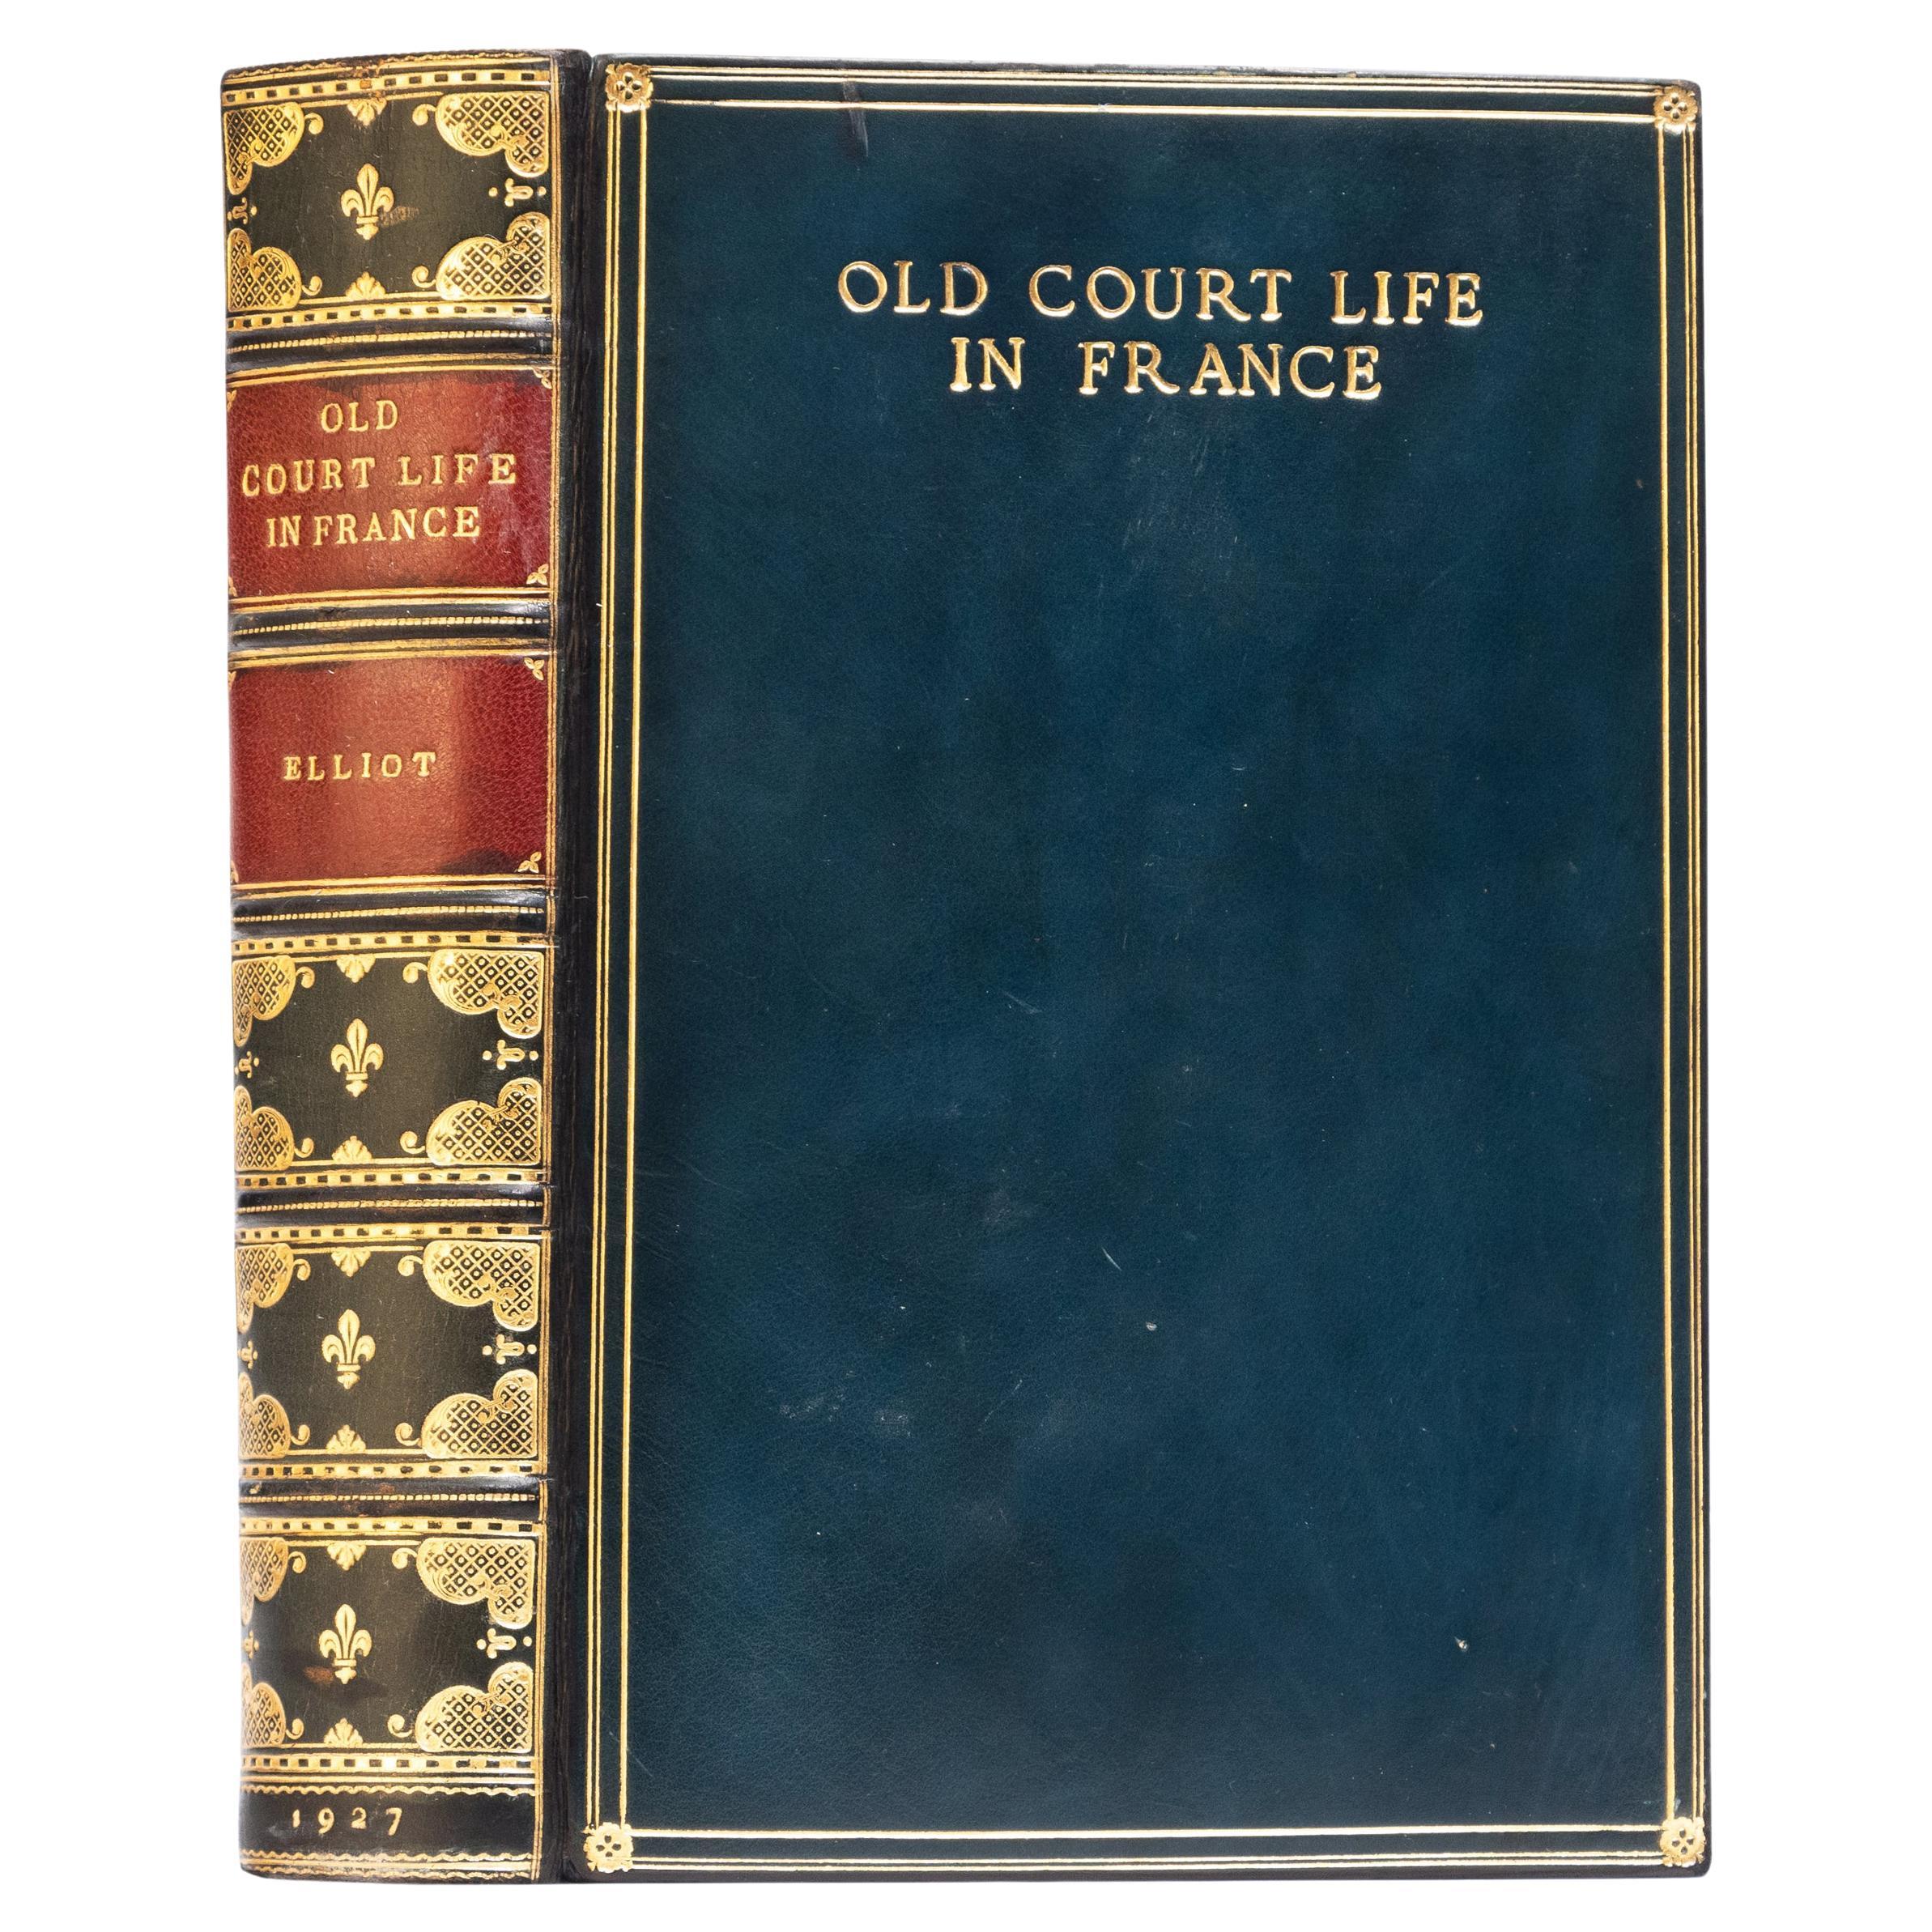 1 Volume. Frances Elliot, Old Court Life in France